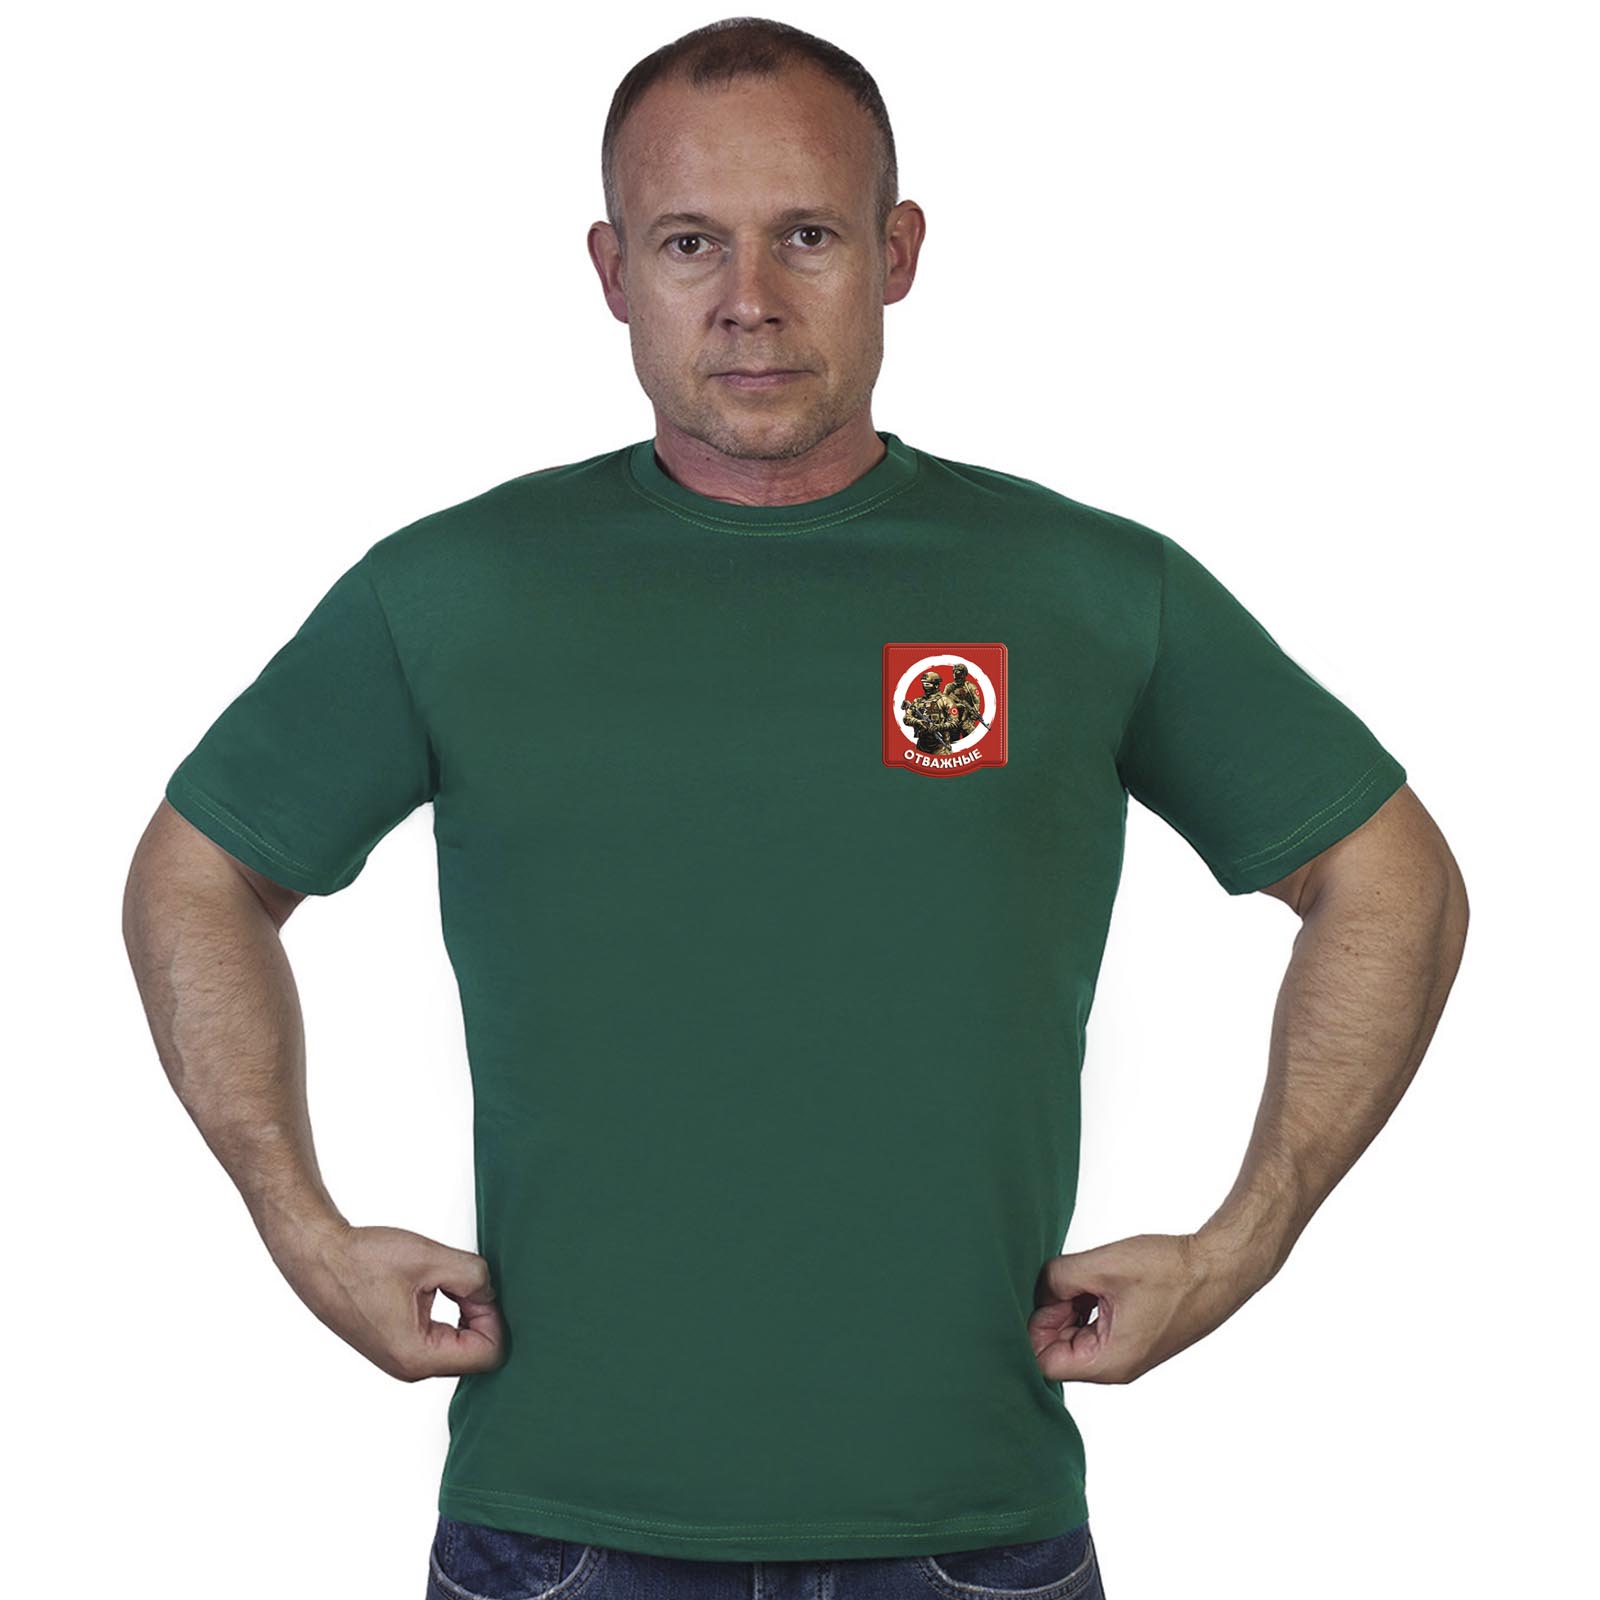 Зелёная футболка с термотрансфером "Отважные"